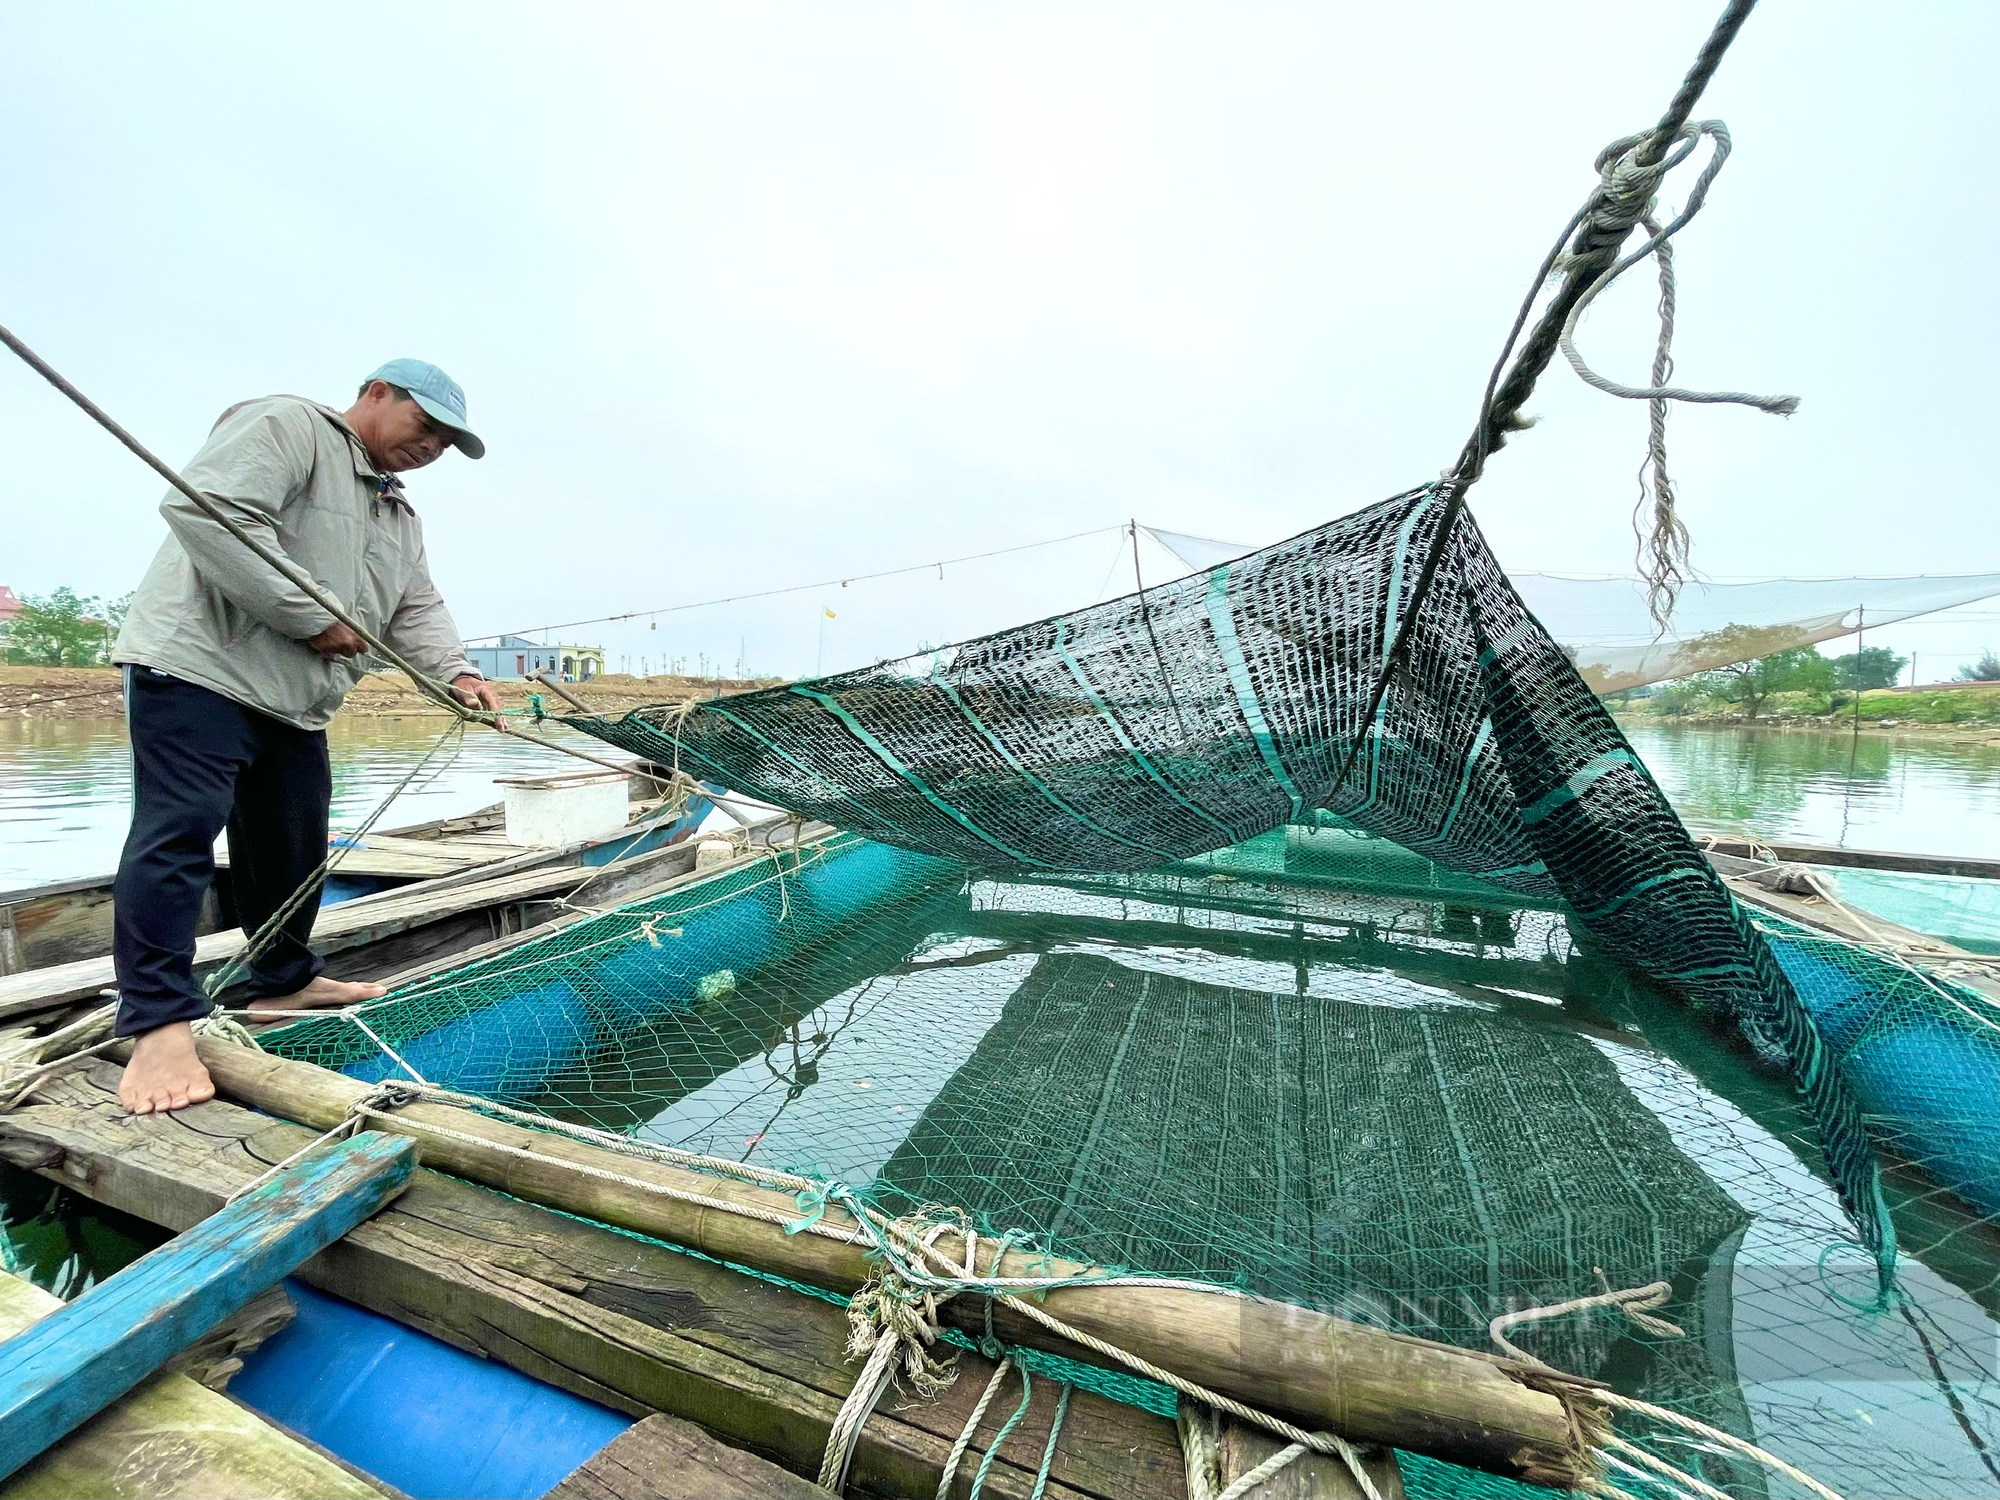 Quảng Bình: Làng nghèo nằm giữa sông Gianh sống khá nhờ nuôi cá lồng - Ảnh 2.